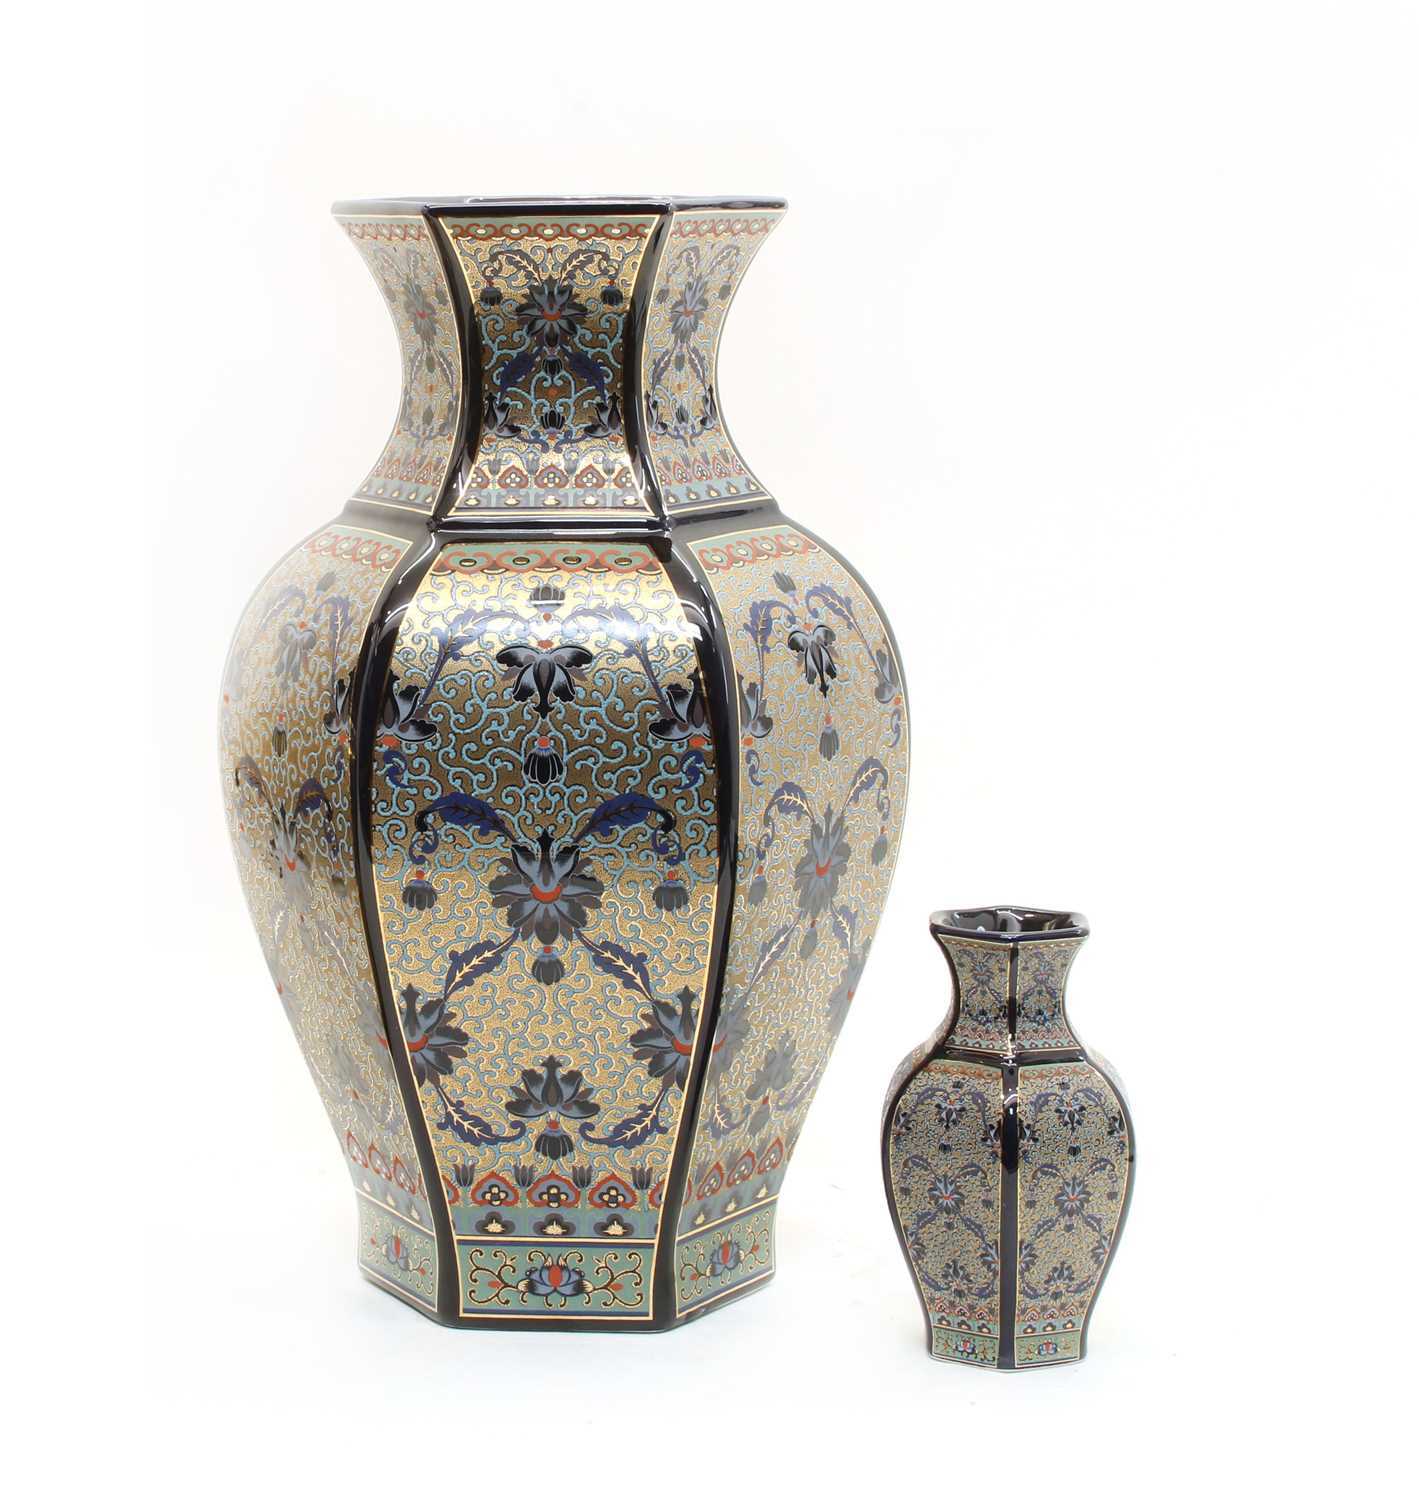 Lot 113 - A large blue glazed porcelain vase of Persian design